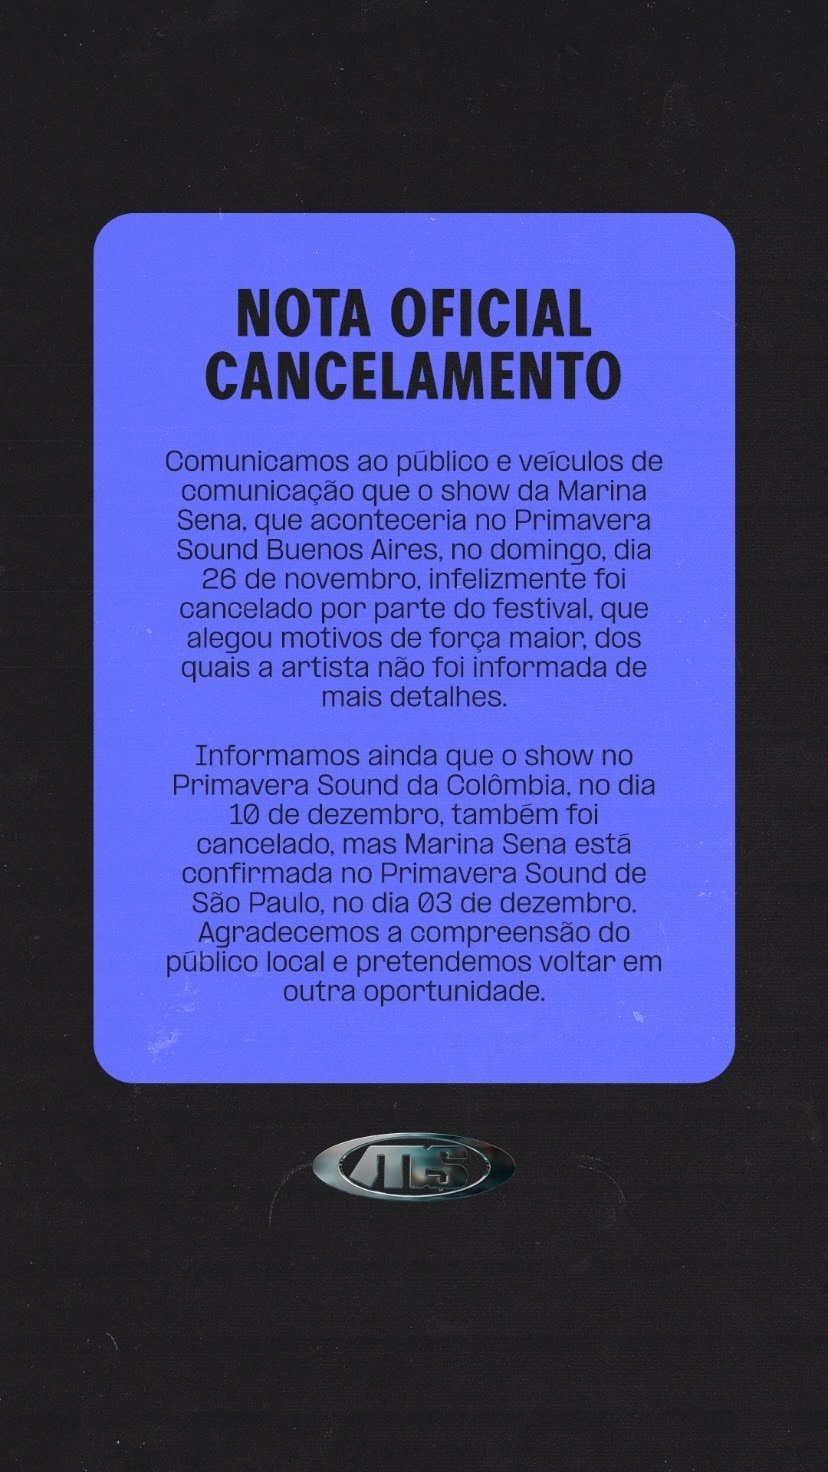 Nota sobre o cancelamento dos shows de Marina Sena na Argentina e na Colômbia
